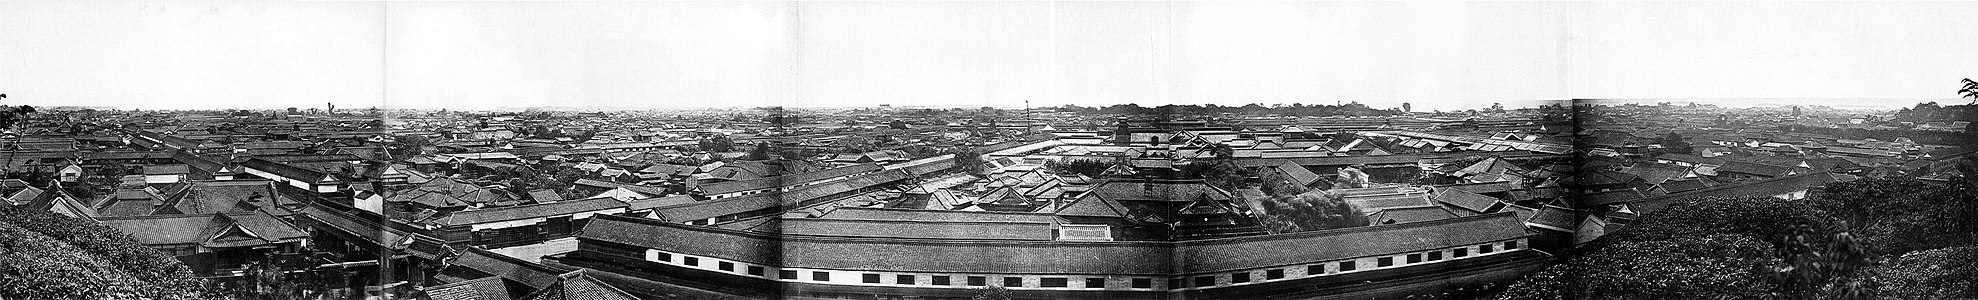 Yedo (Edo, bugünkü Tokyo)'daki "daimyō yashiki" (daimyōların Edo'daki lojmanları)'nin Atagoyama'dan panoramik görünümü. Samuray döneminin son yıllarında 1865 ya da 1866 yılında İtalyan asıllı Britanyalı fotoğrafçı Felice Beato tarafından çekilmiş olan dört parça fotoğraf birleştirilerek oluşturuldu. (Üreten: Felice Beato)